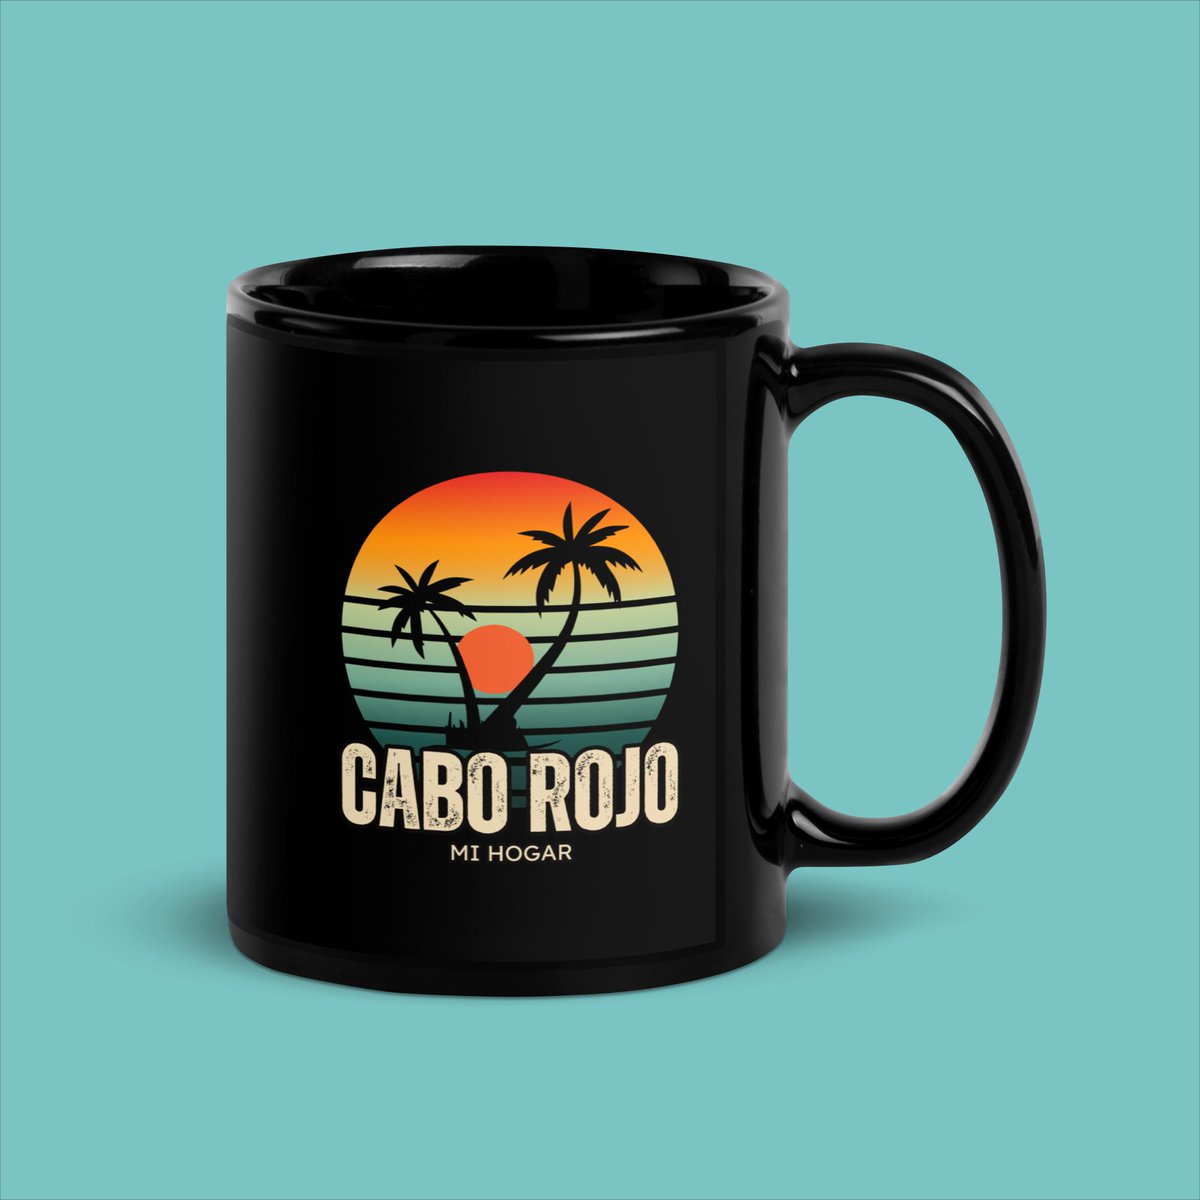 🌞 #BuenosDías con sabor a Cabo Rojo. ¿Buscas una manera de llevar contigo la belleza de nuestras playas? 🌴☕️ ¡Nuestra Taza Negra Brillante es la respuesta! Perfecta para coleccionistas y amantes del café por igual. Encuéntrala aquí: caborojo.com/product/recuer… #CaboRojoEnTuCasa